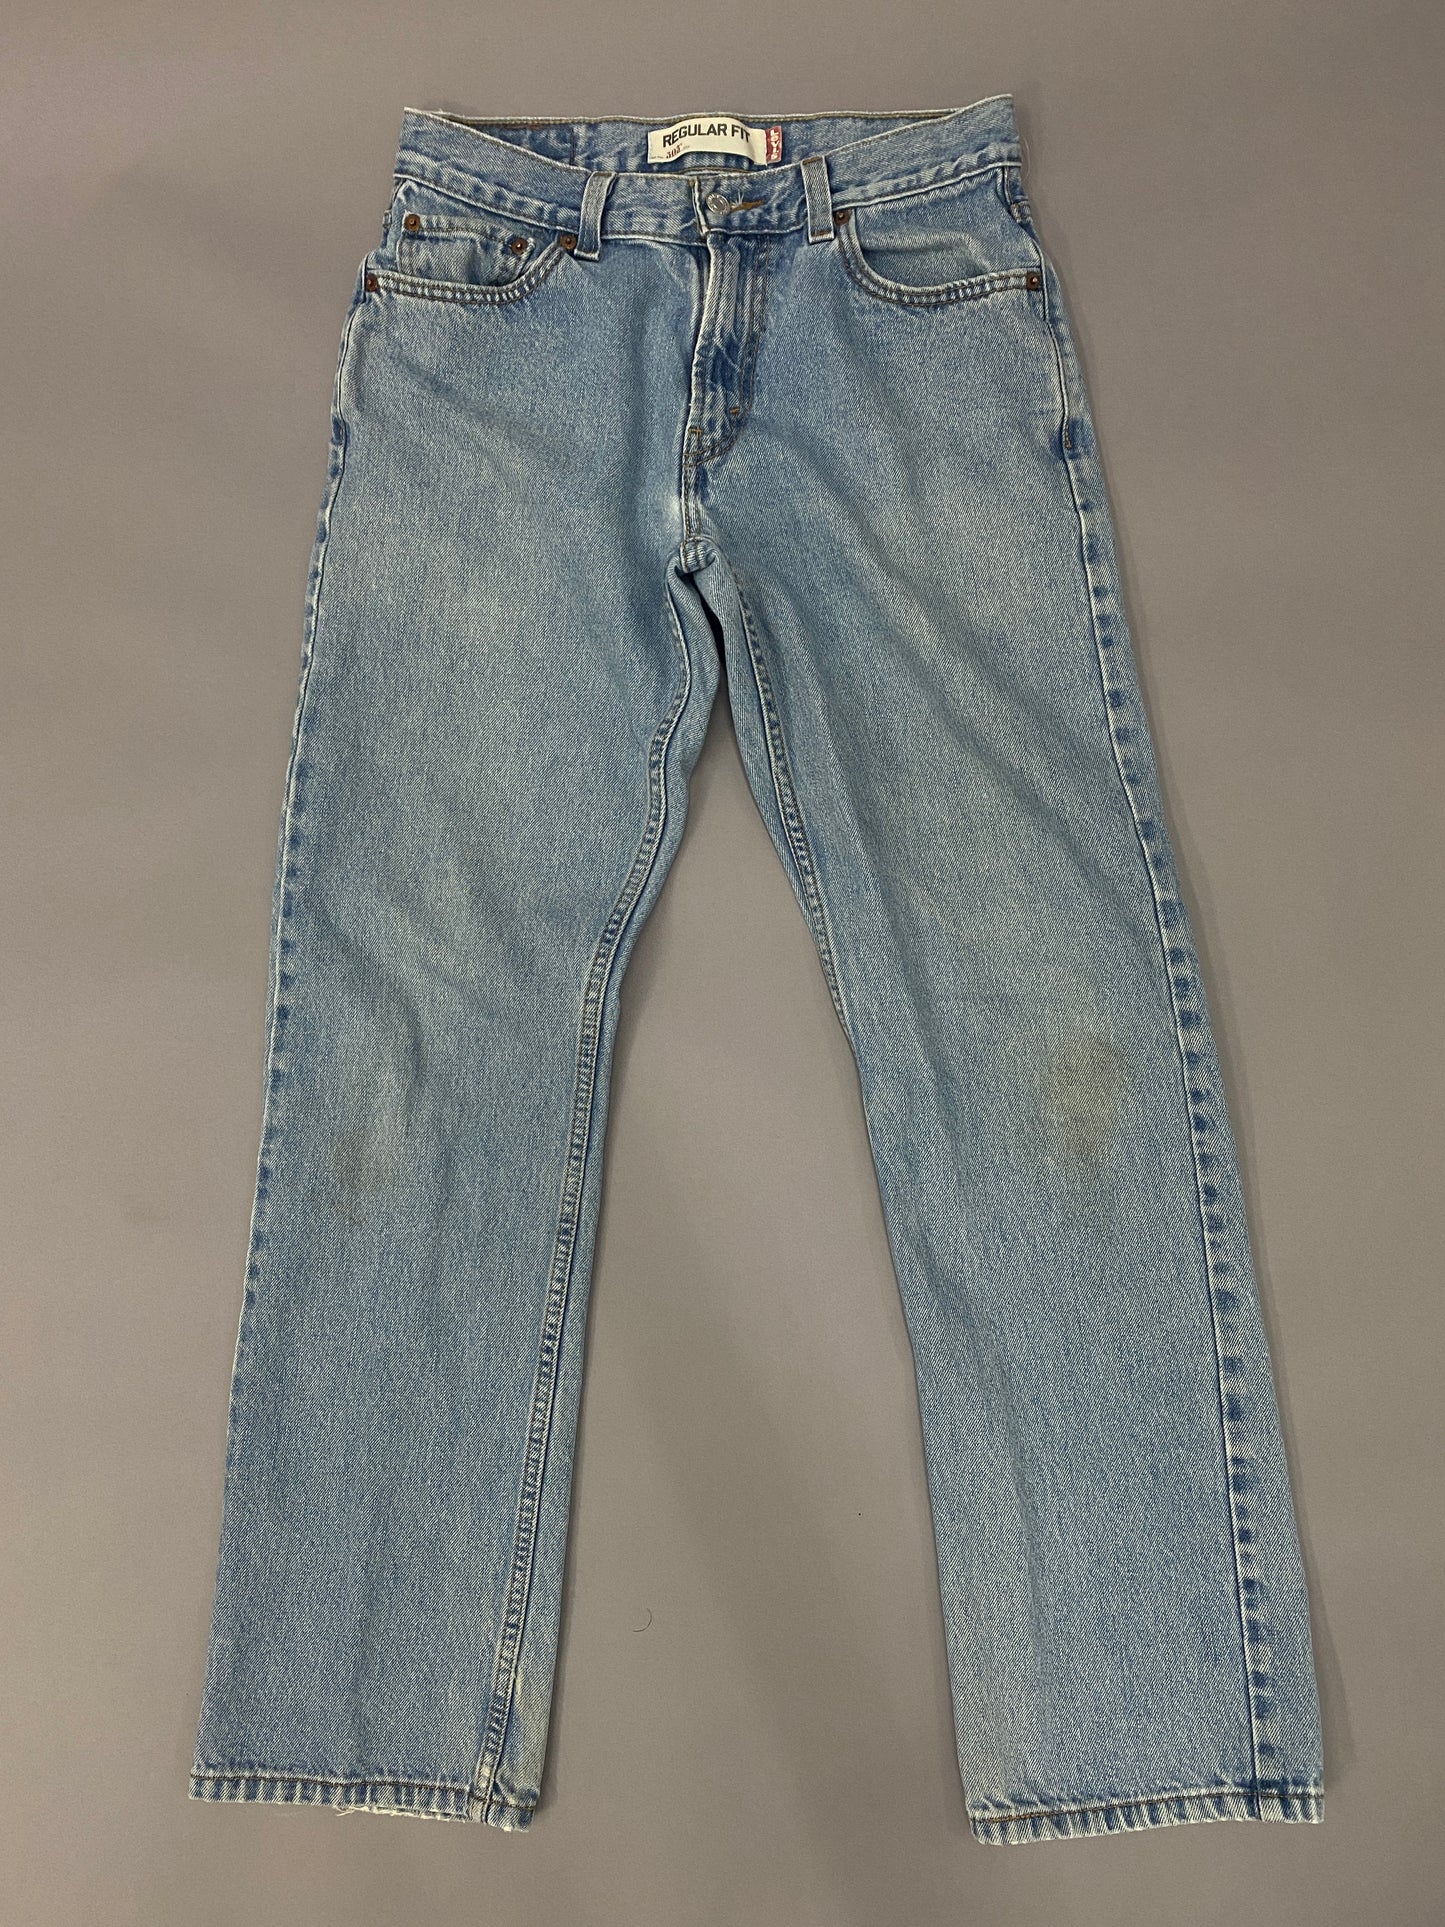 Levi's 505 Jeans - 30x32